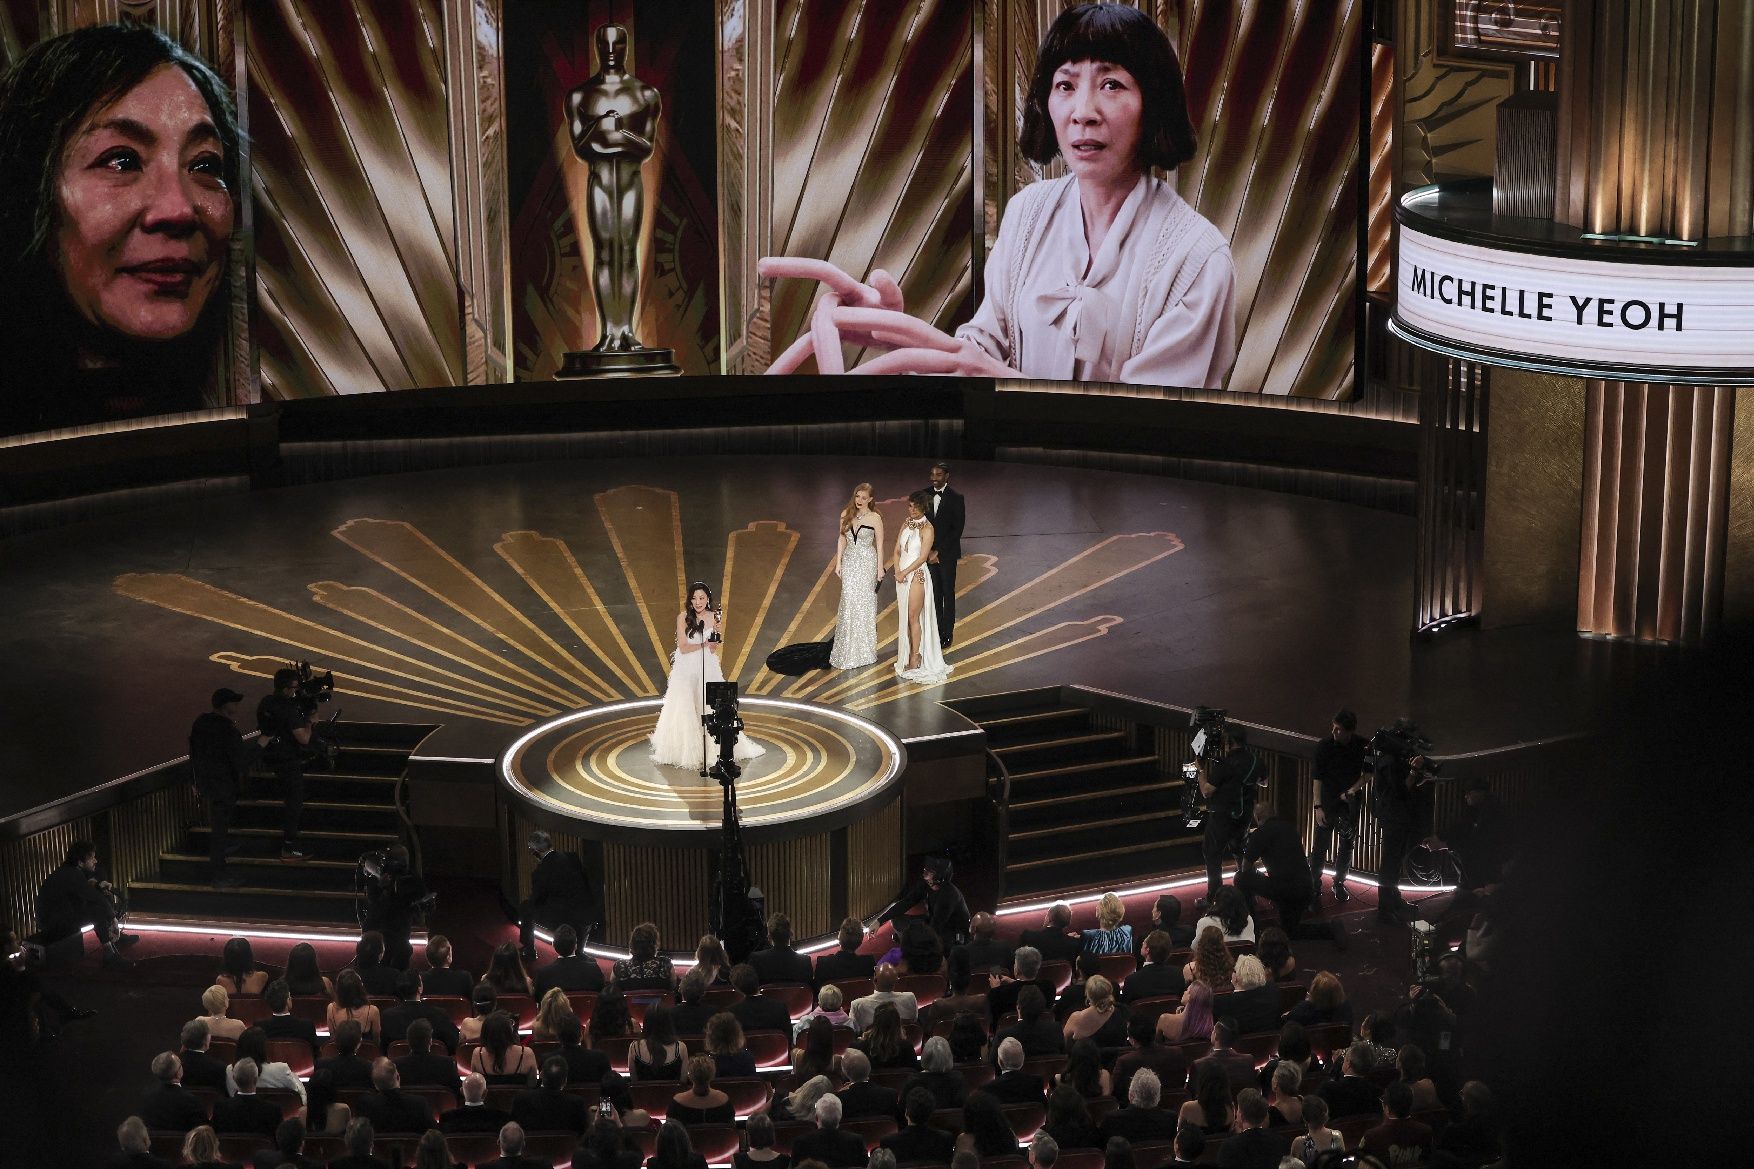 La bogeria multivers de 'Tot alhora a tot arreu' arrasa als Oscar